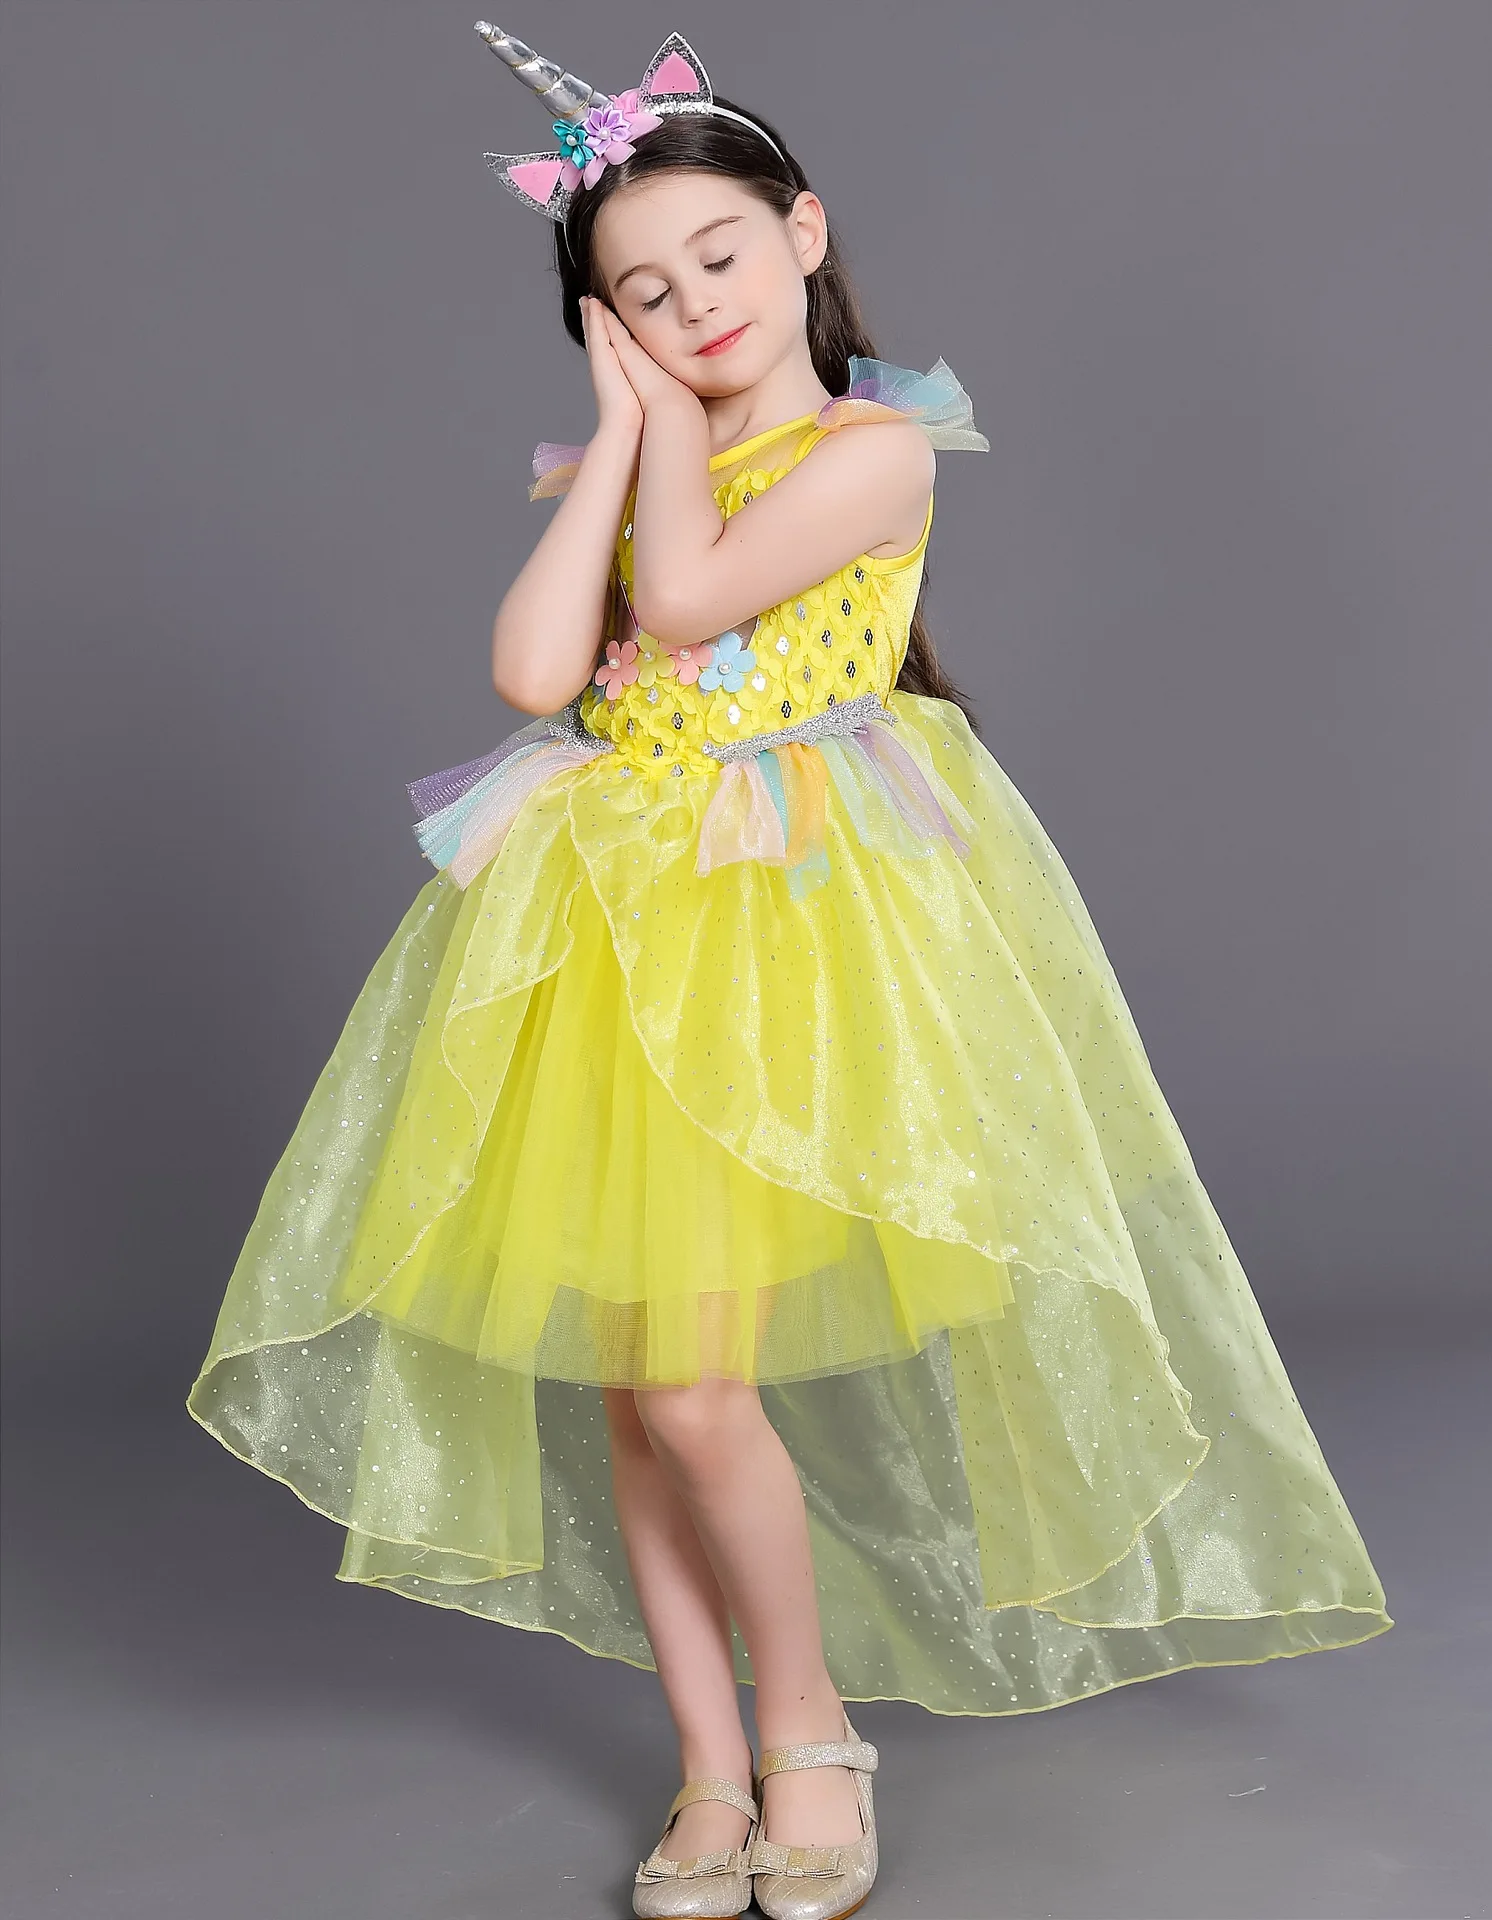 Подростковые платья для девочек Единорог Костюм принцессы праздничная одежда Vestido радужного цвета для маленьких одежда для детей возрастом 2, 5, 7, 9 лет Детская праздничная одежда; платье со шлейфом